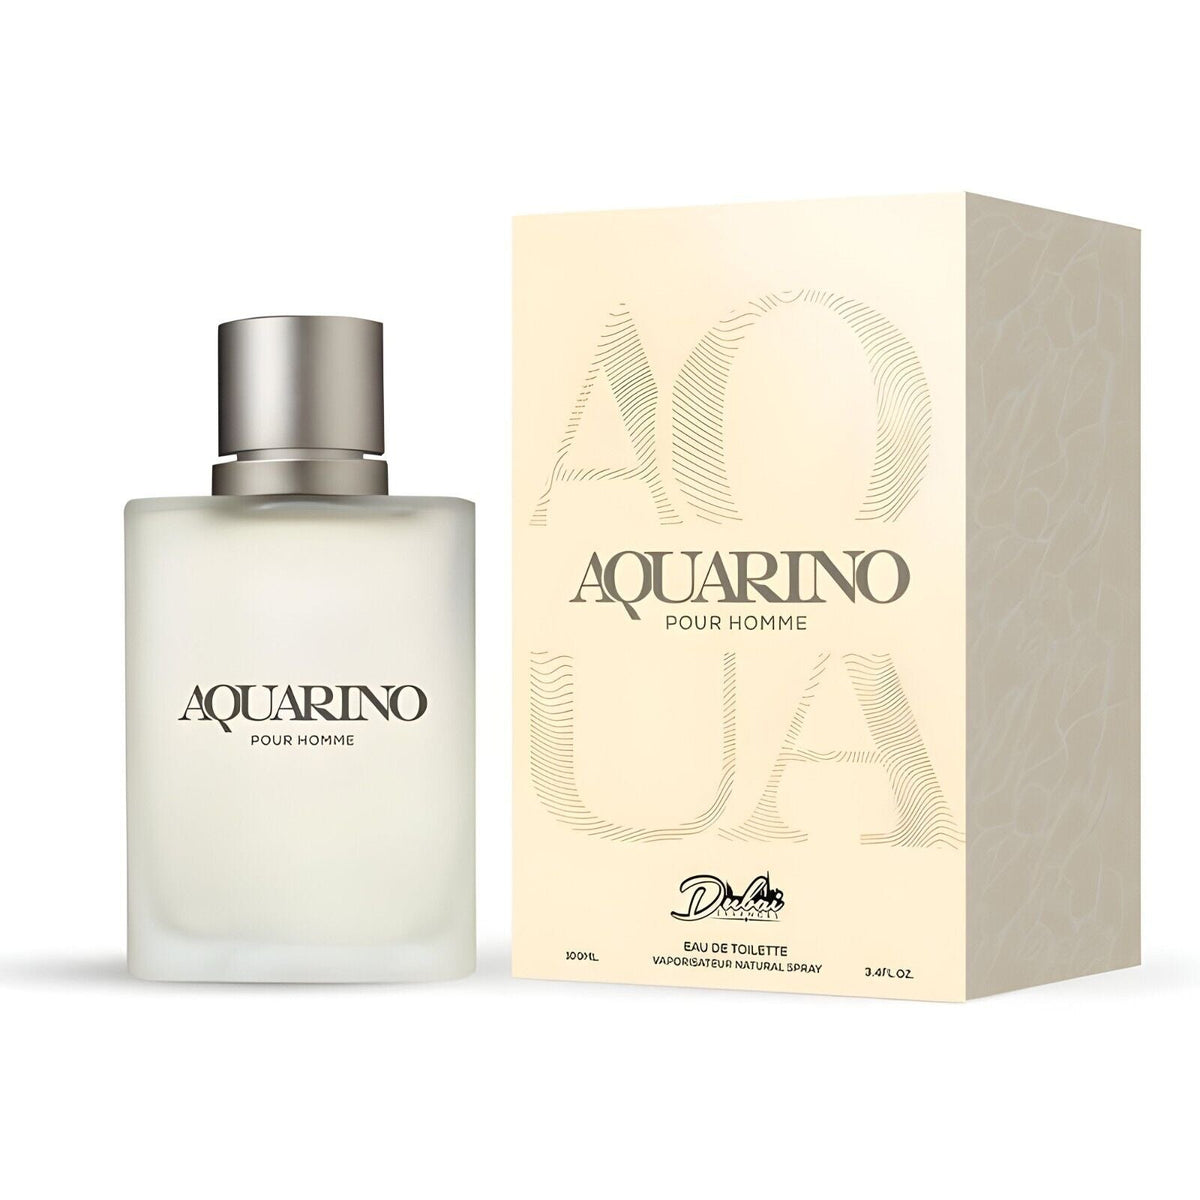 Aquarino Perfume by Dubai Essence Eau De Toilette for Man 3.4fl oz